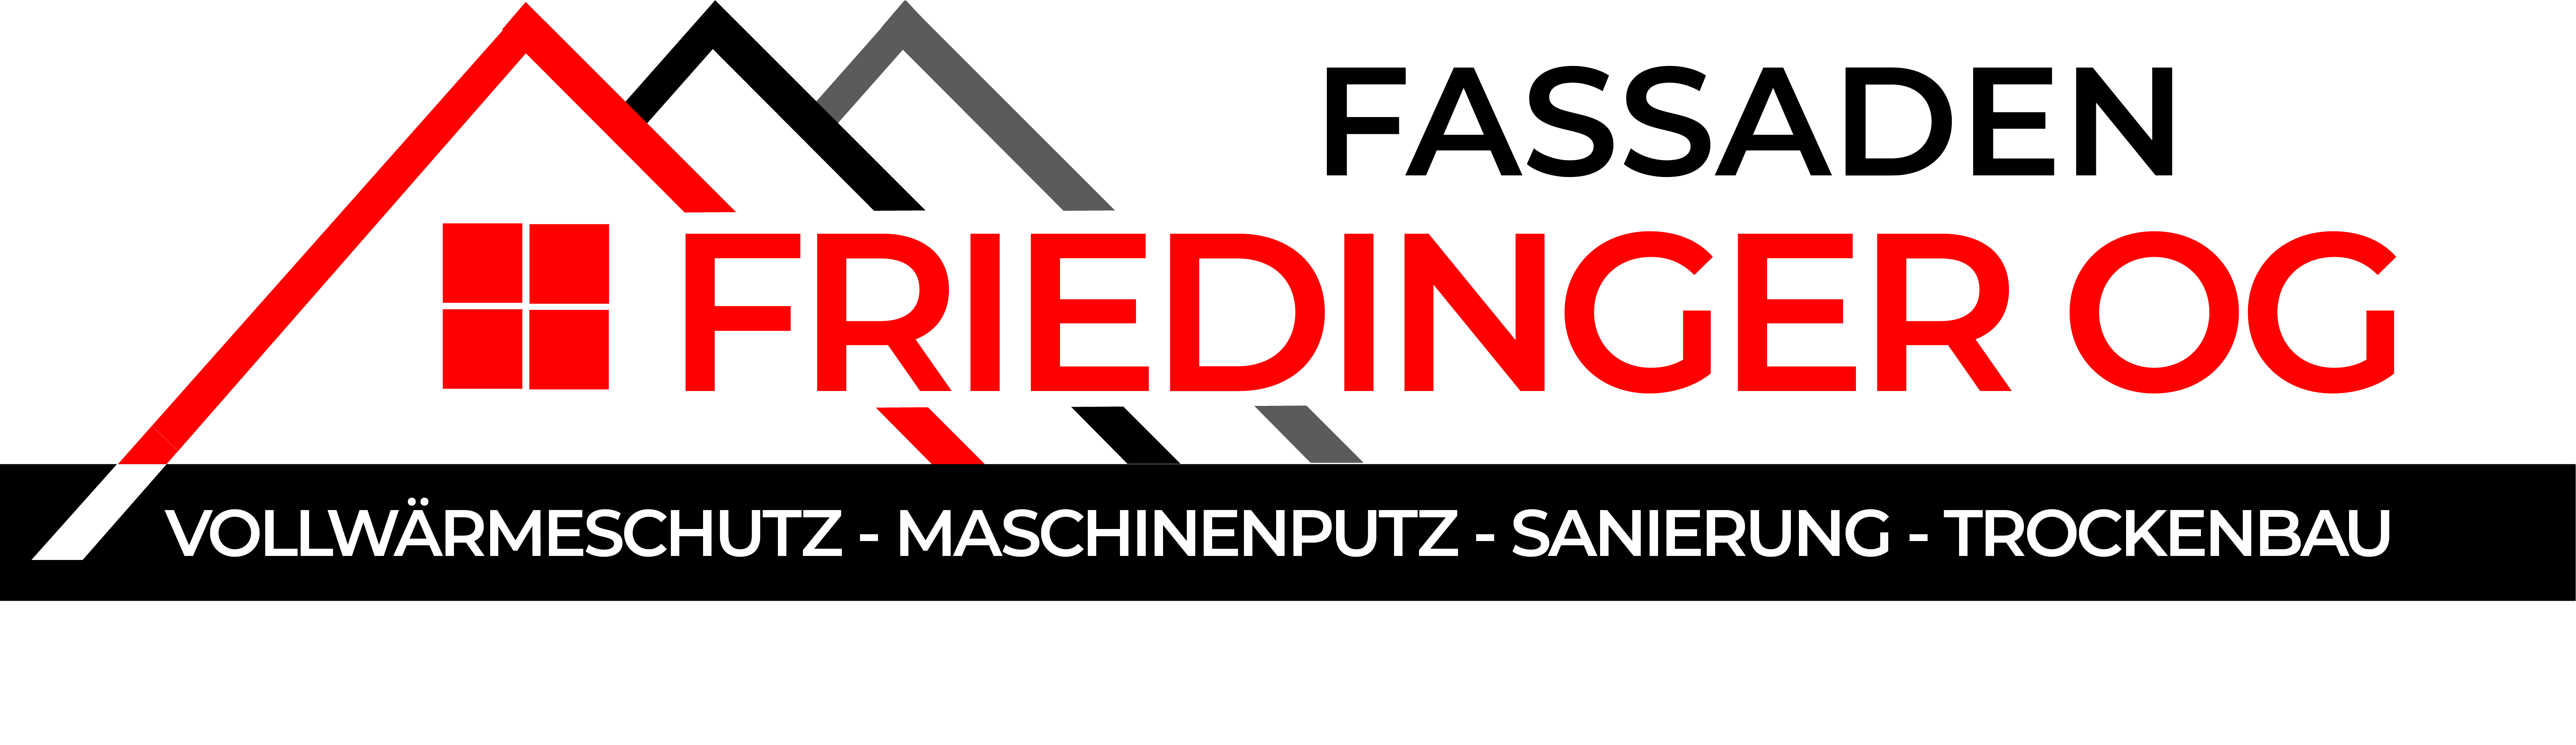 Fassanden Friedinger Logo